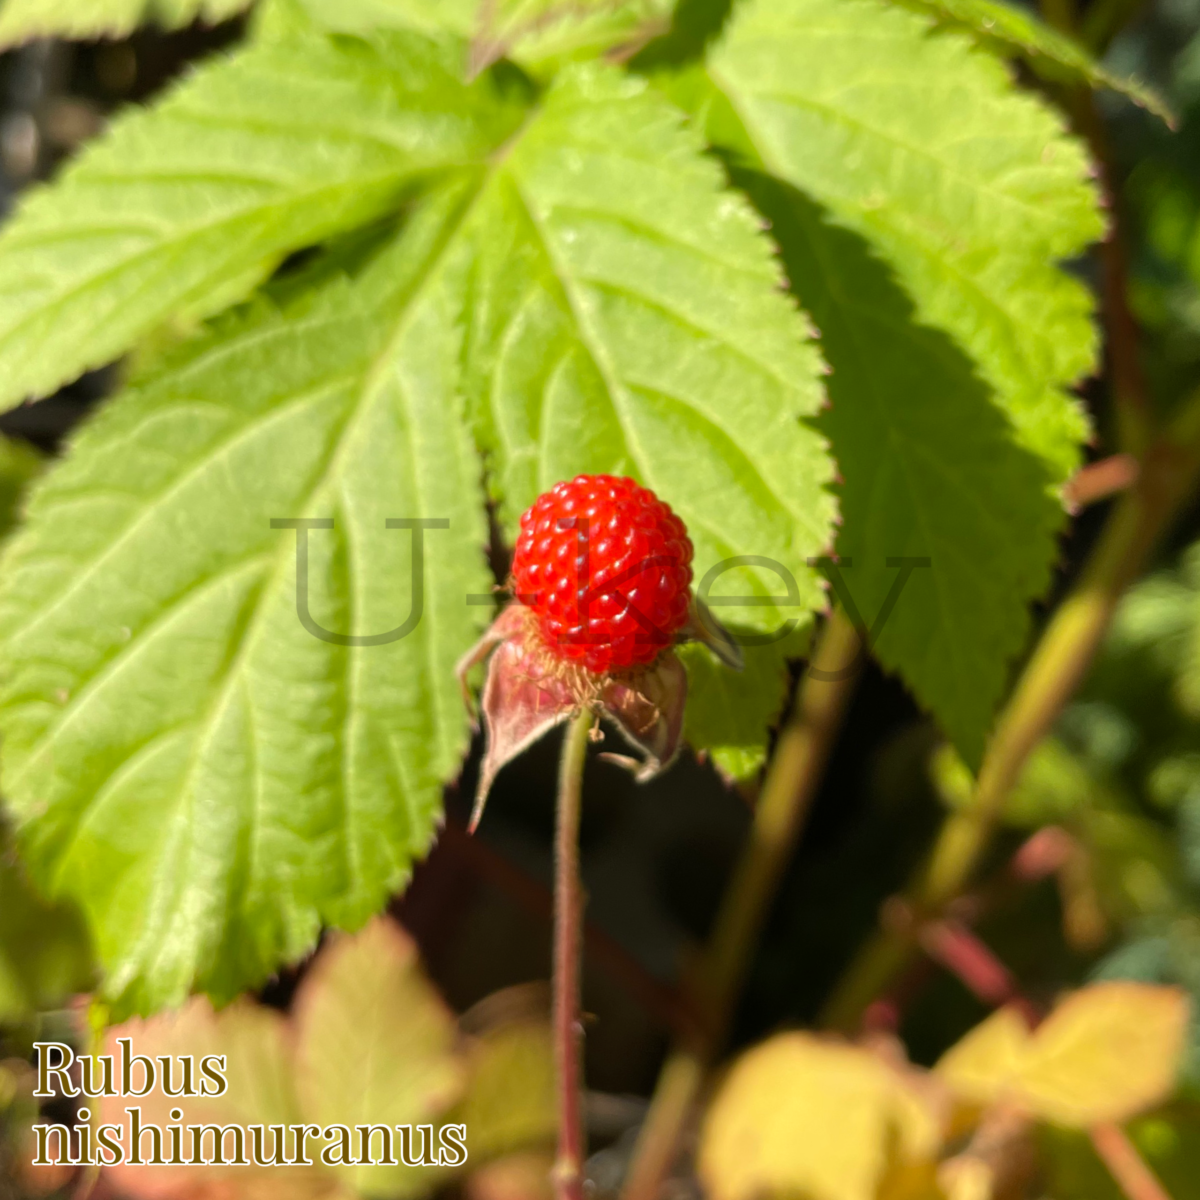 Hachijo Kusa- Japanese Wild Raspberry,Rubus nishimuranus